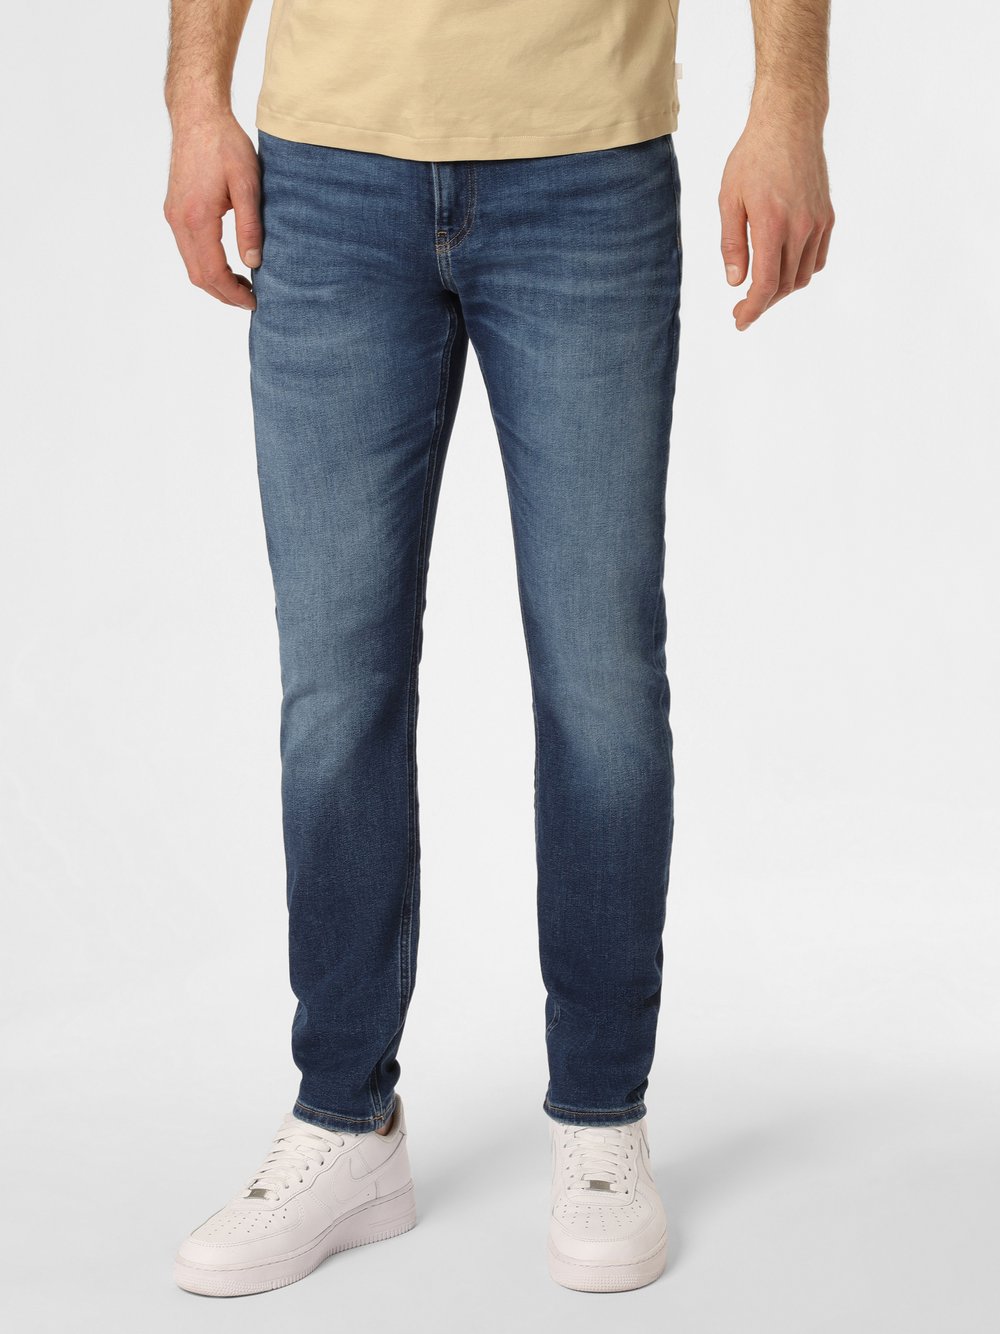 Calvin Klein Jeans - Jeansy męskie, niebieski